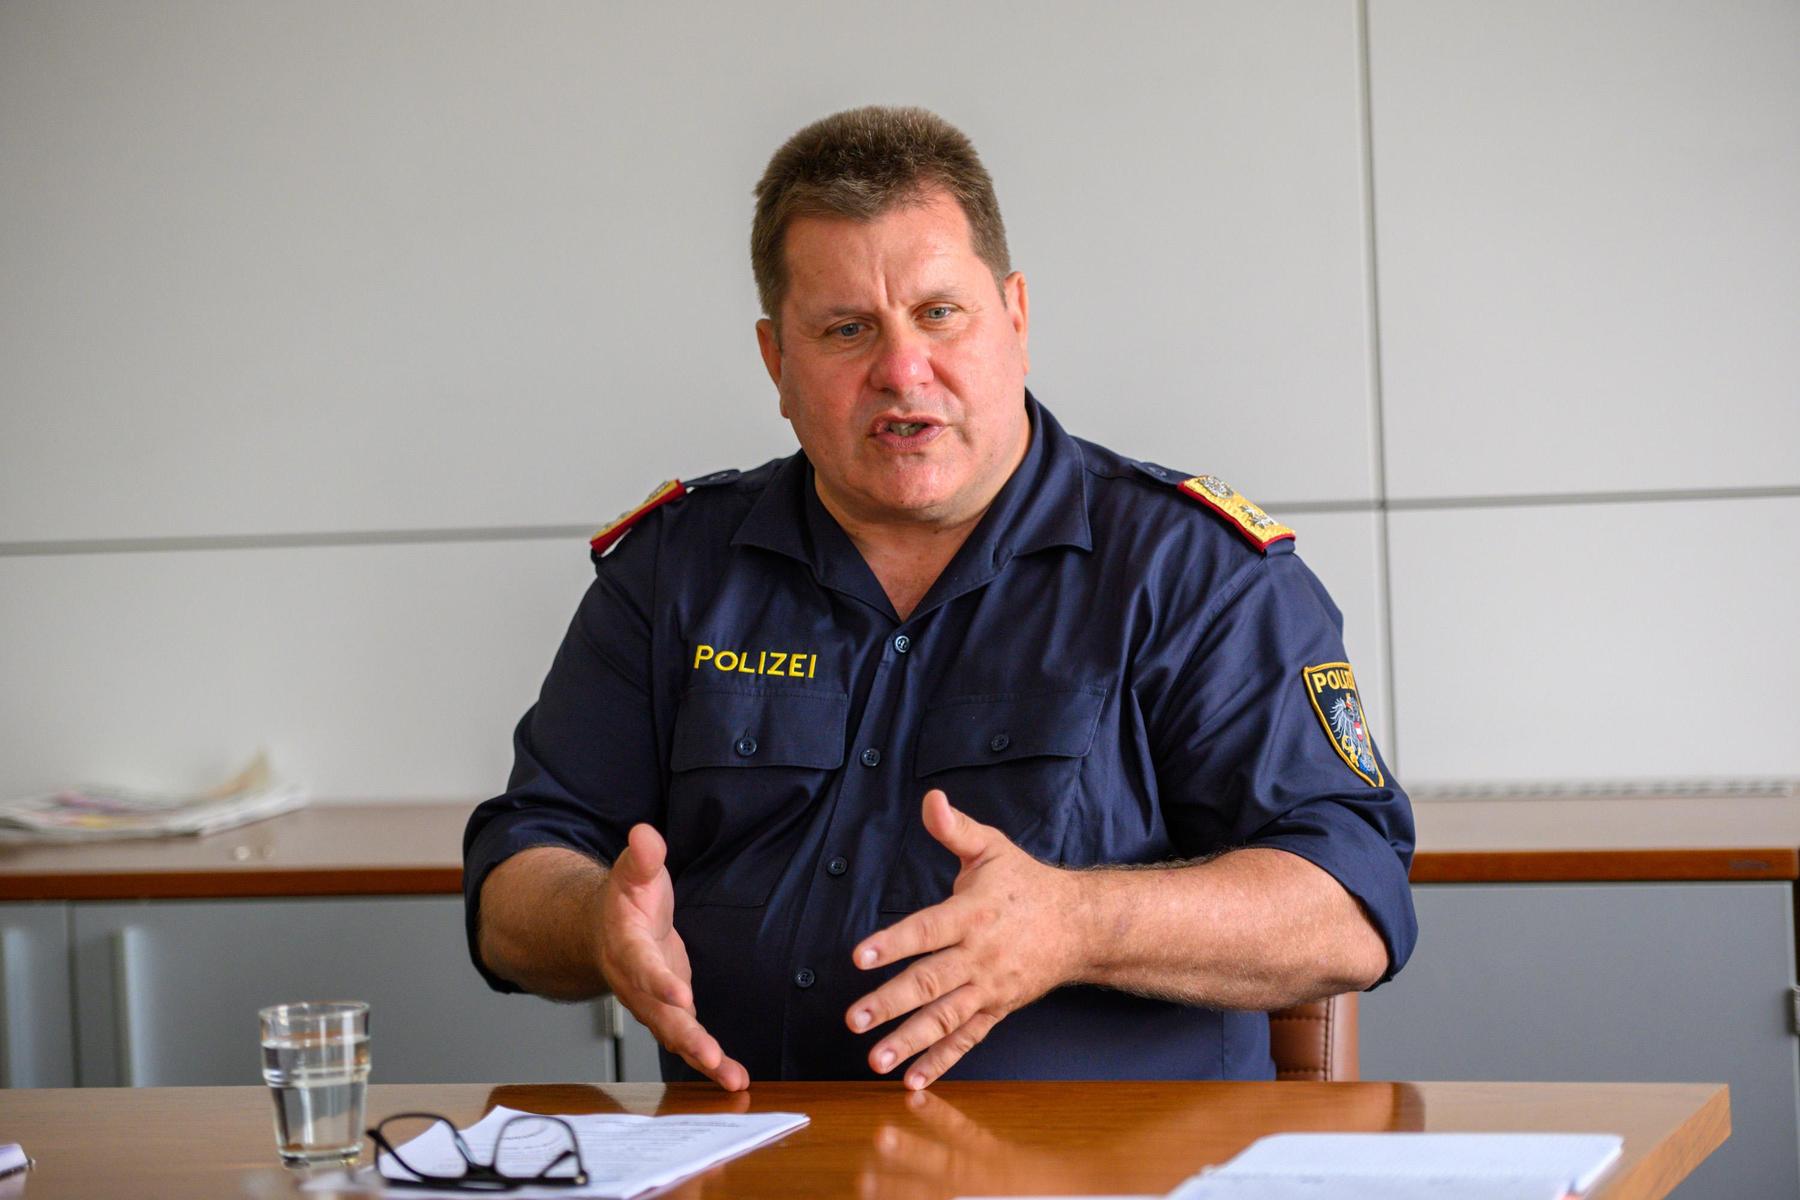 Polizei in Kärnten: „Ich brauche und will immer mehr Personal haben“